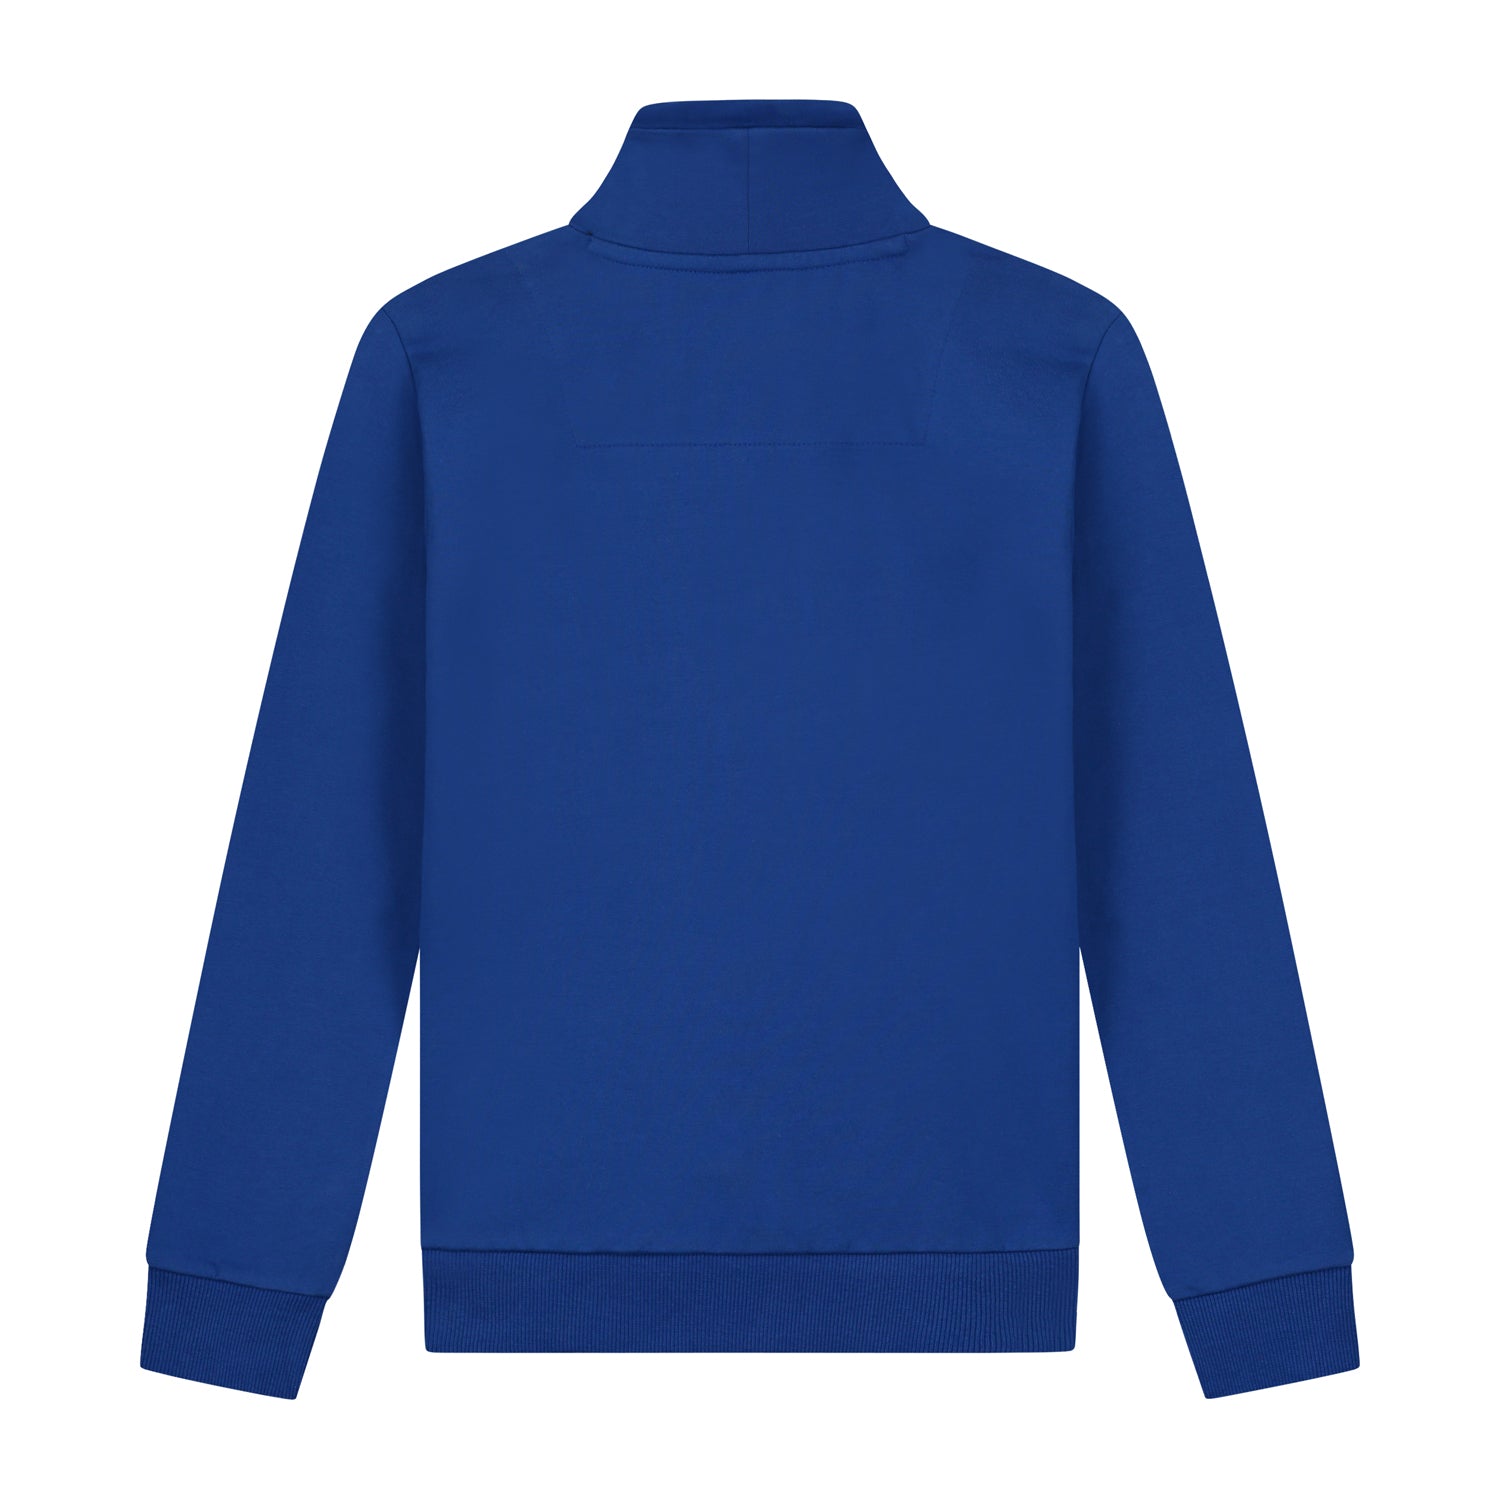 Jongens Sweater  Sook Blue van Skurk in de kleur Blue in maat 158-164.